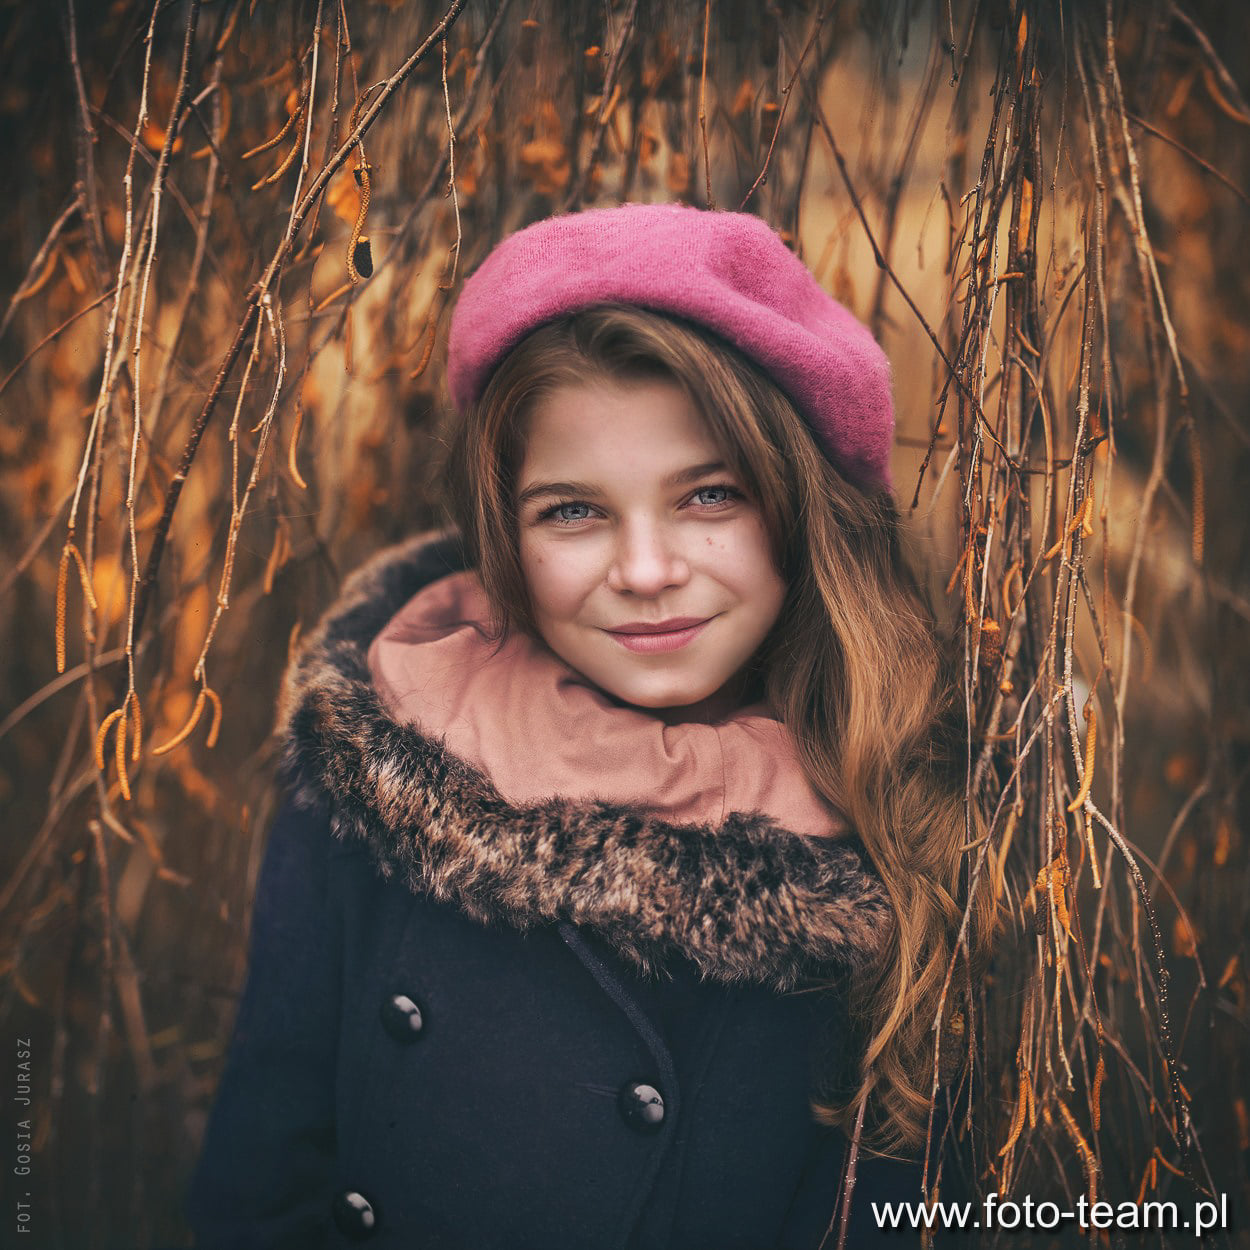 foto-team.pl - Gosia Jurasz - Fotografia dziecięca malowana światłem - 27. marca 2021